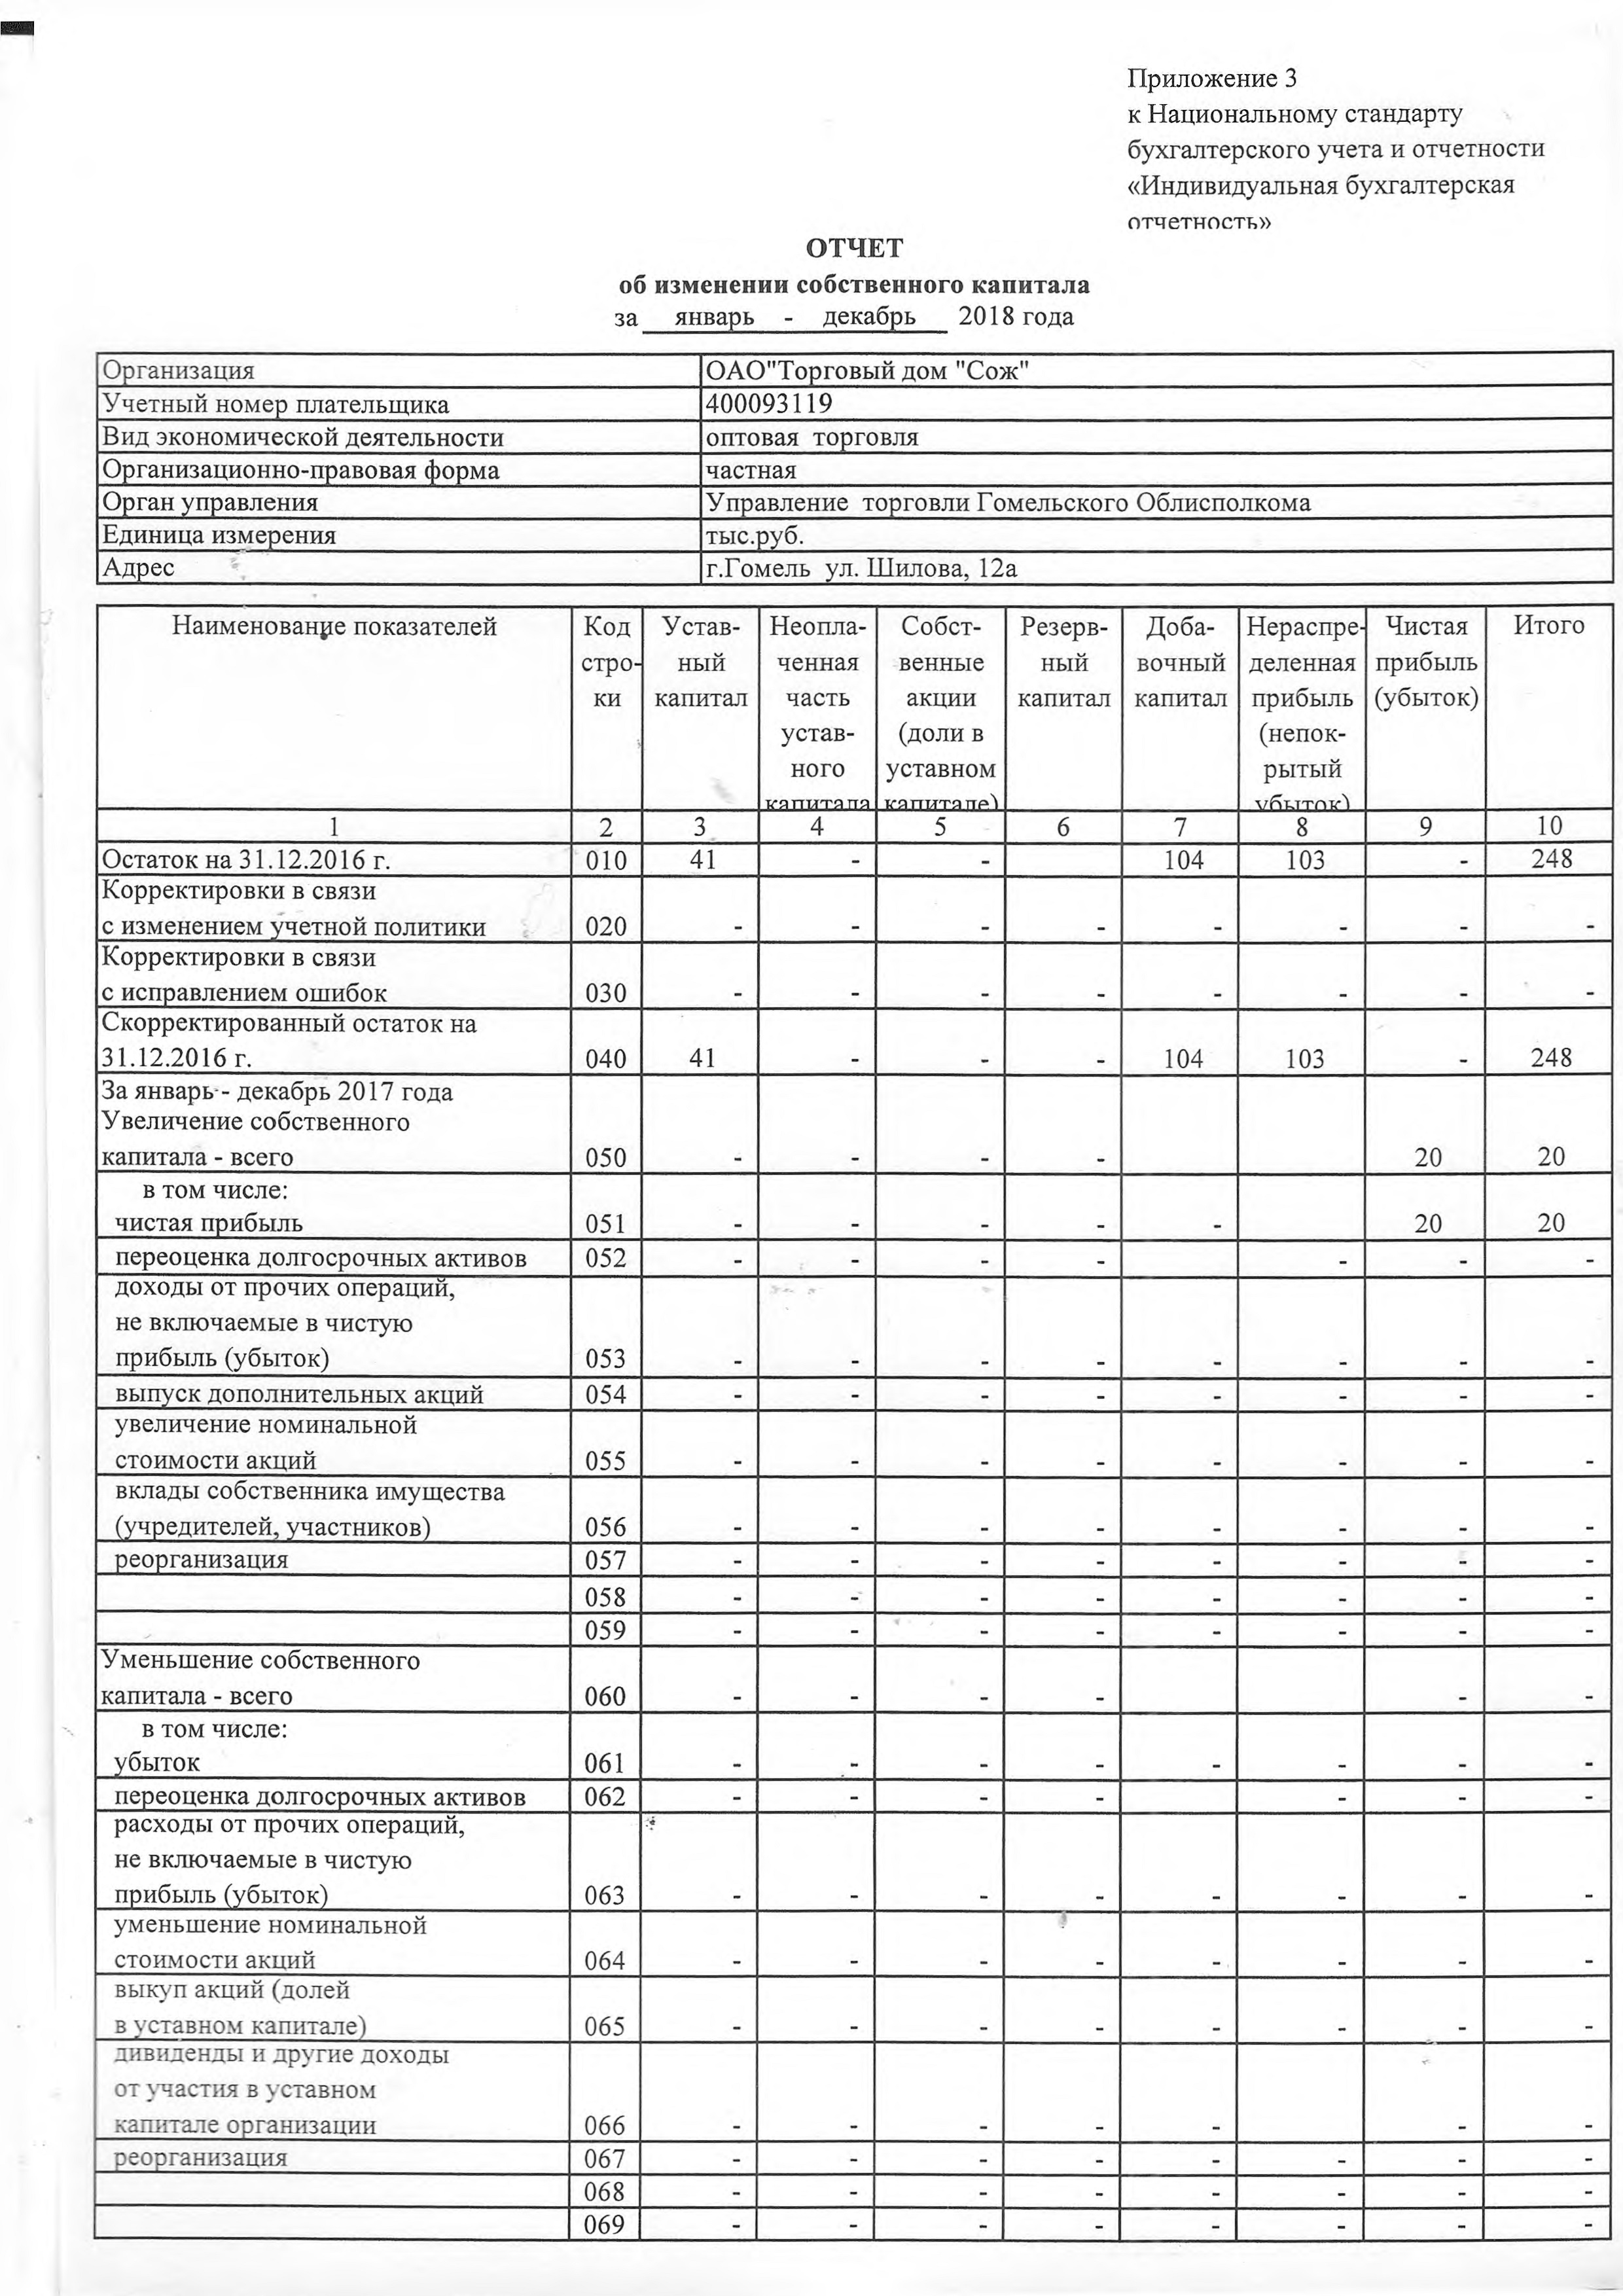 ОАО Торговый дом Сож - Отчет об изменении собственного капитала за 2018 год (страница 1)